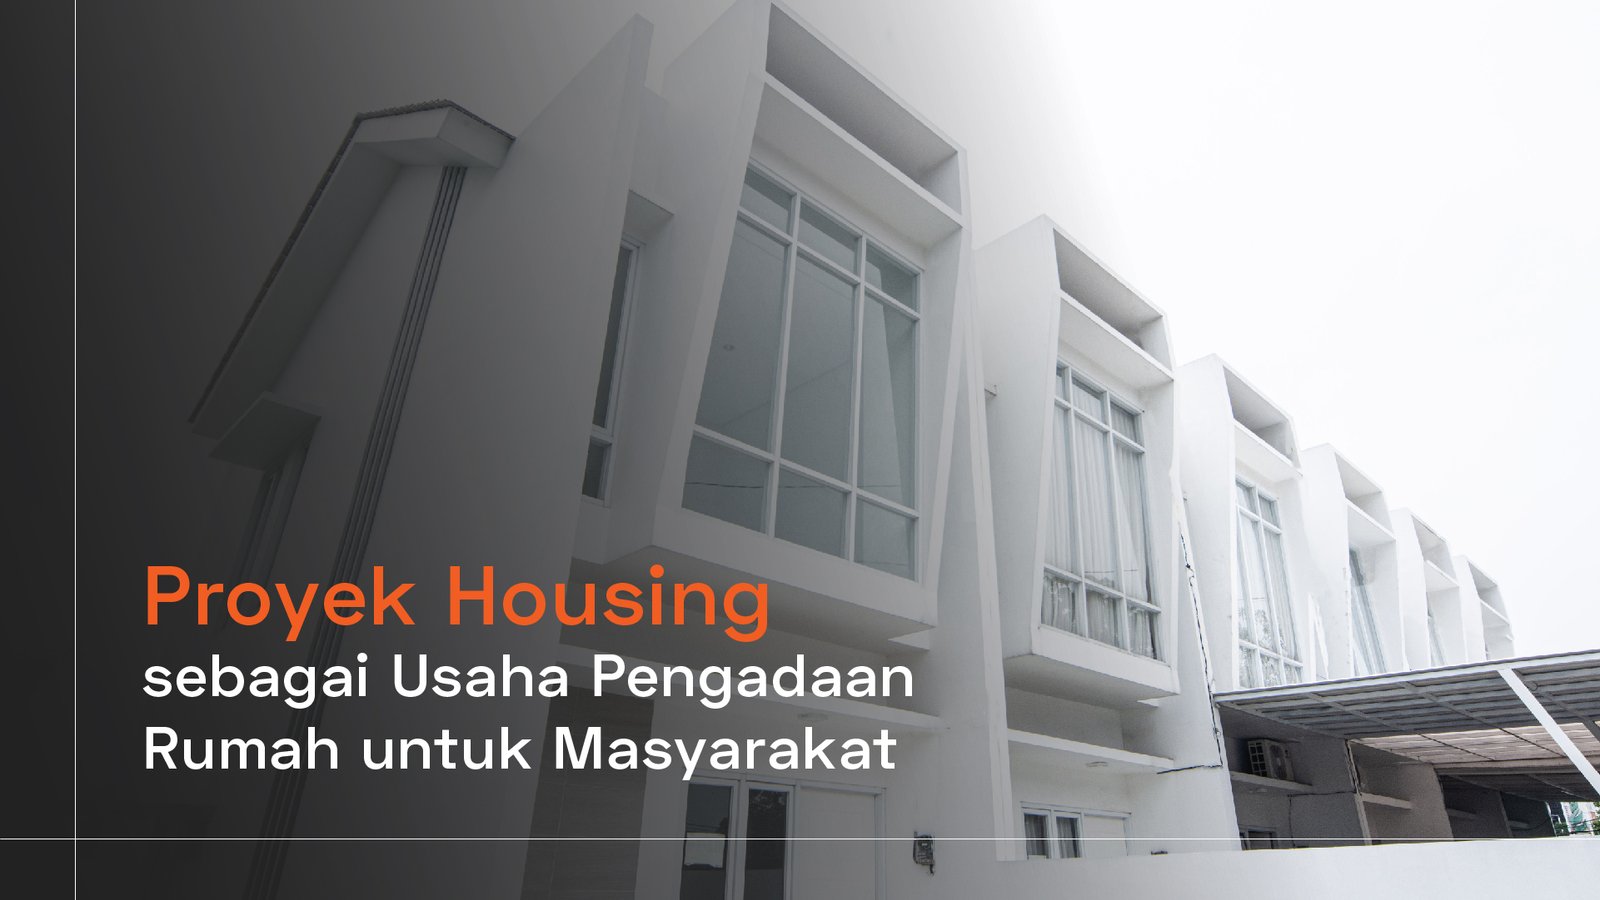 You are currently viewing Proyek Housing sebagai Usaha Pengadaan Rumah untuk Masyarakat